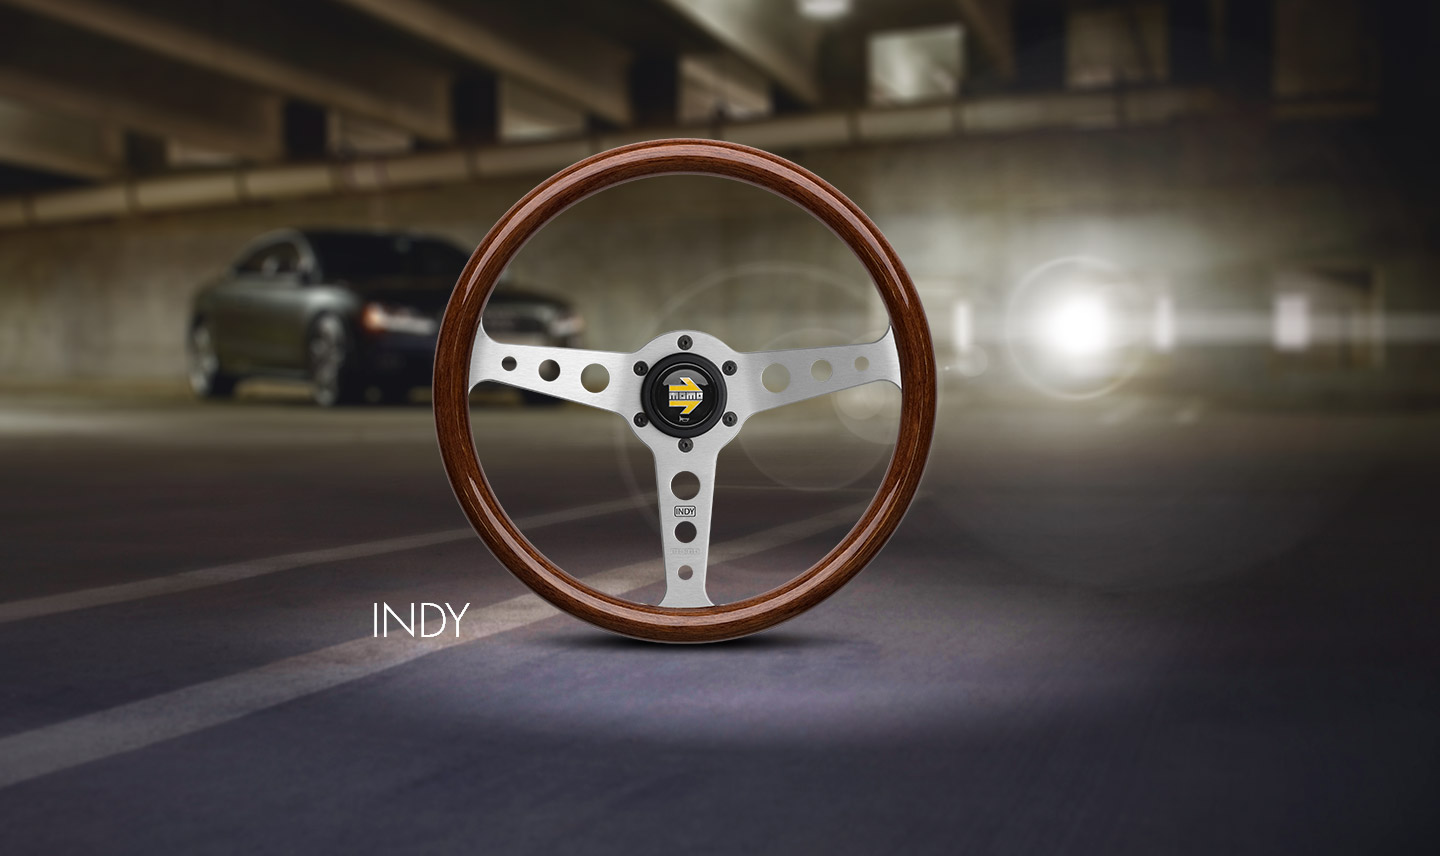 Indy-steering-wheel